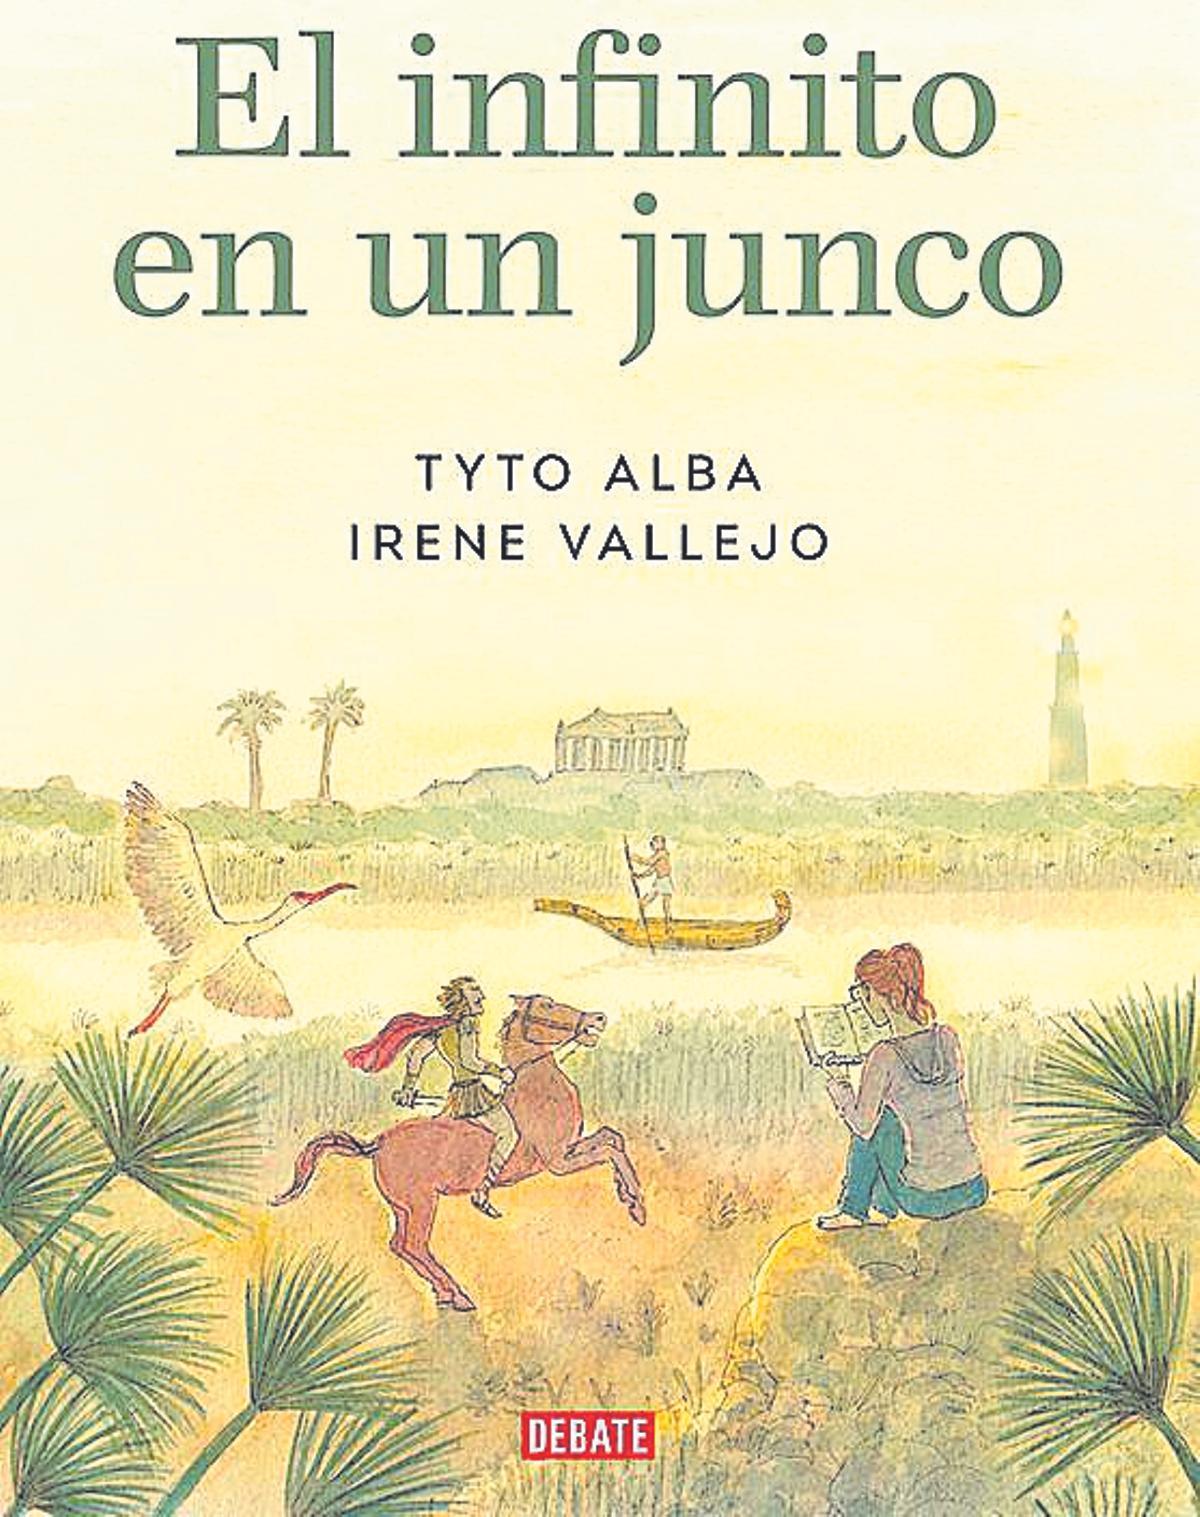 Tyto Alba/Irene Vallejo  El infinito en un junco   Debate   120 páginas / 16,90 euros